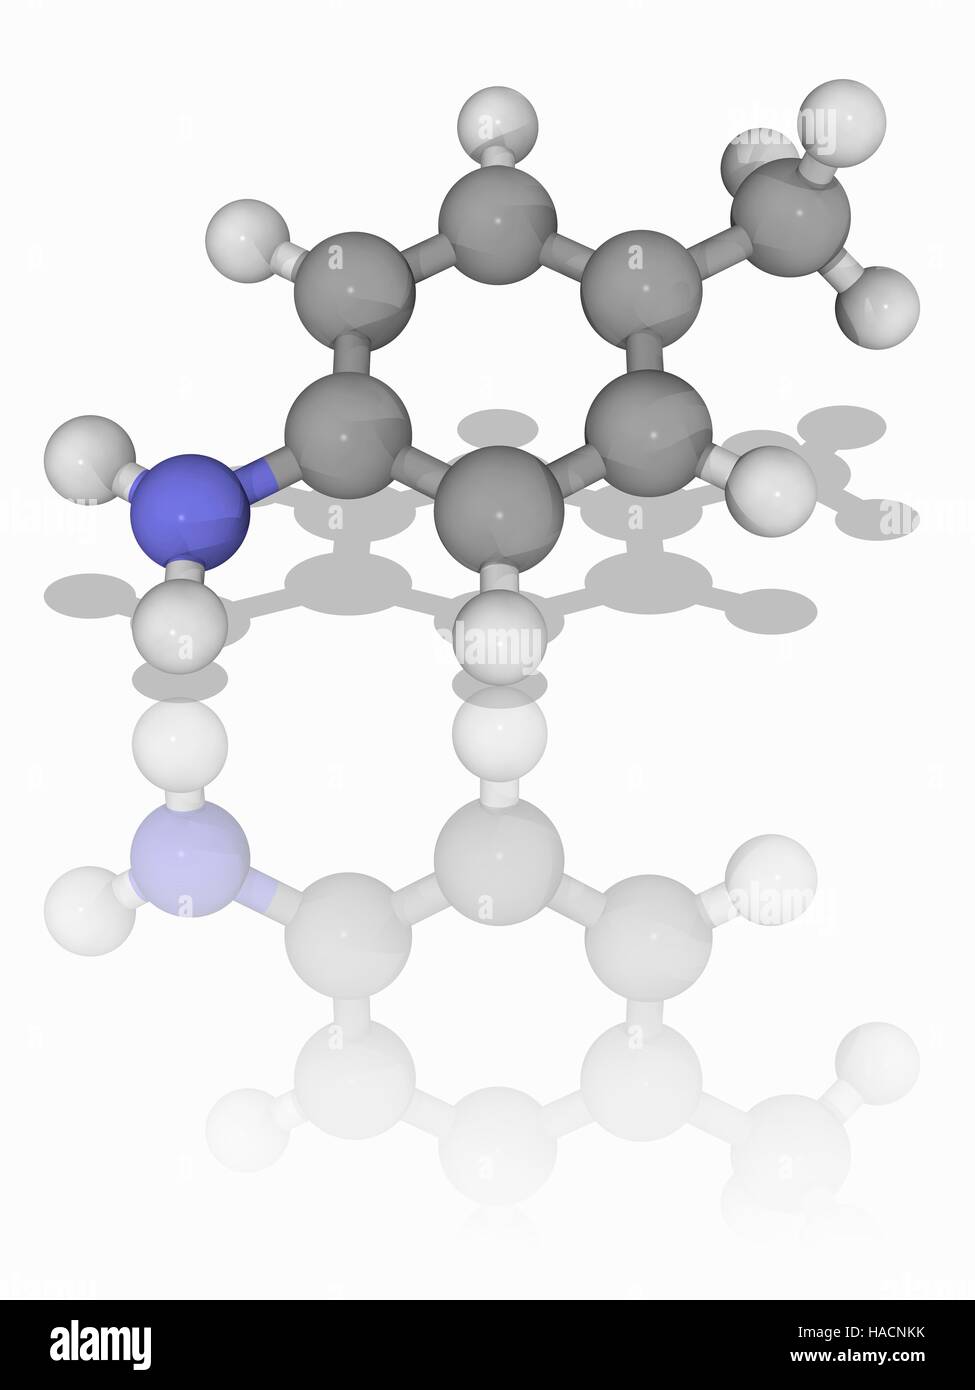 Para-Toluidine. Il modello molecolare del composto organico para-toluidina (C7.H9.N), una sostanza chimica che ha proprietà simili a quelle di anilina. Il termine "para' si riferisce alla posizione del metile (CH3) gruppo sull'anello fenilico di fronte al gruppo amminico (NH2). Gli atomi sono rappresentati da sfere e sono codificati a colori: carbonio (grigio), Idrogeno (bianco) e azoto (blu). Illustrazione. Foto Stock